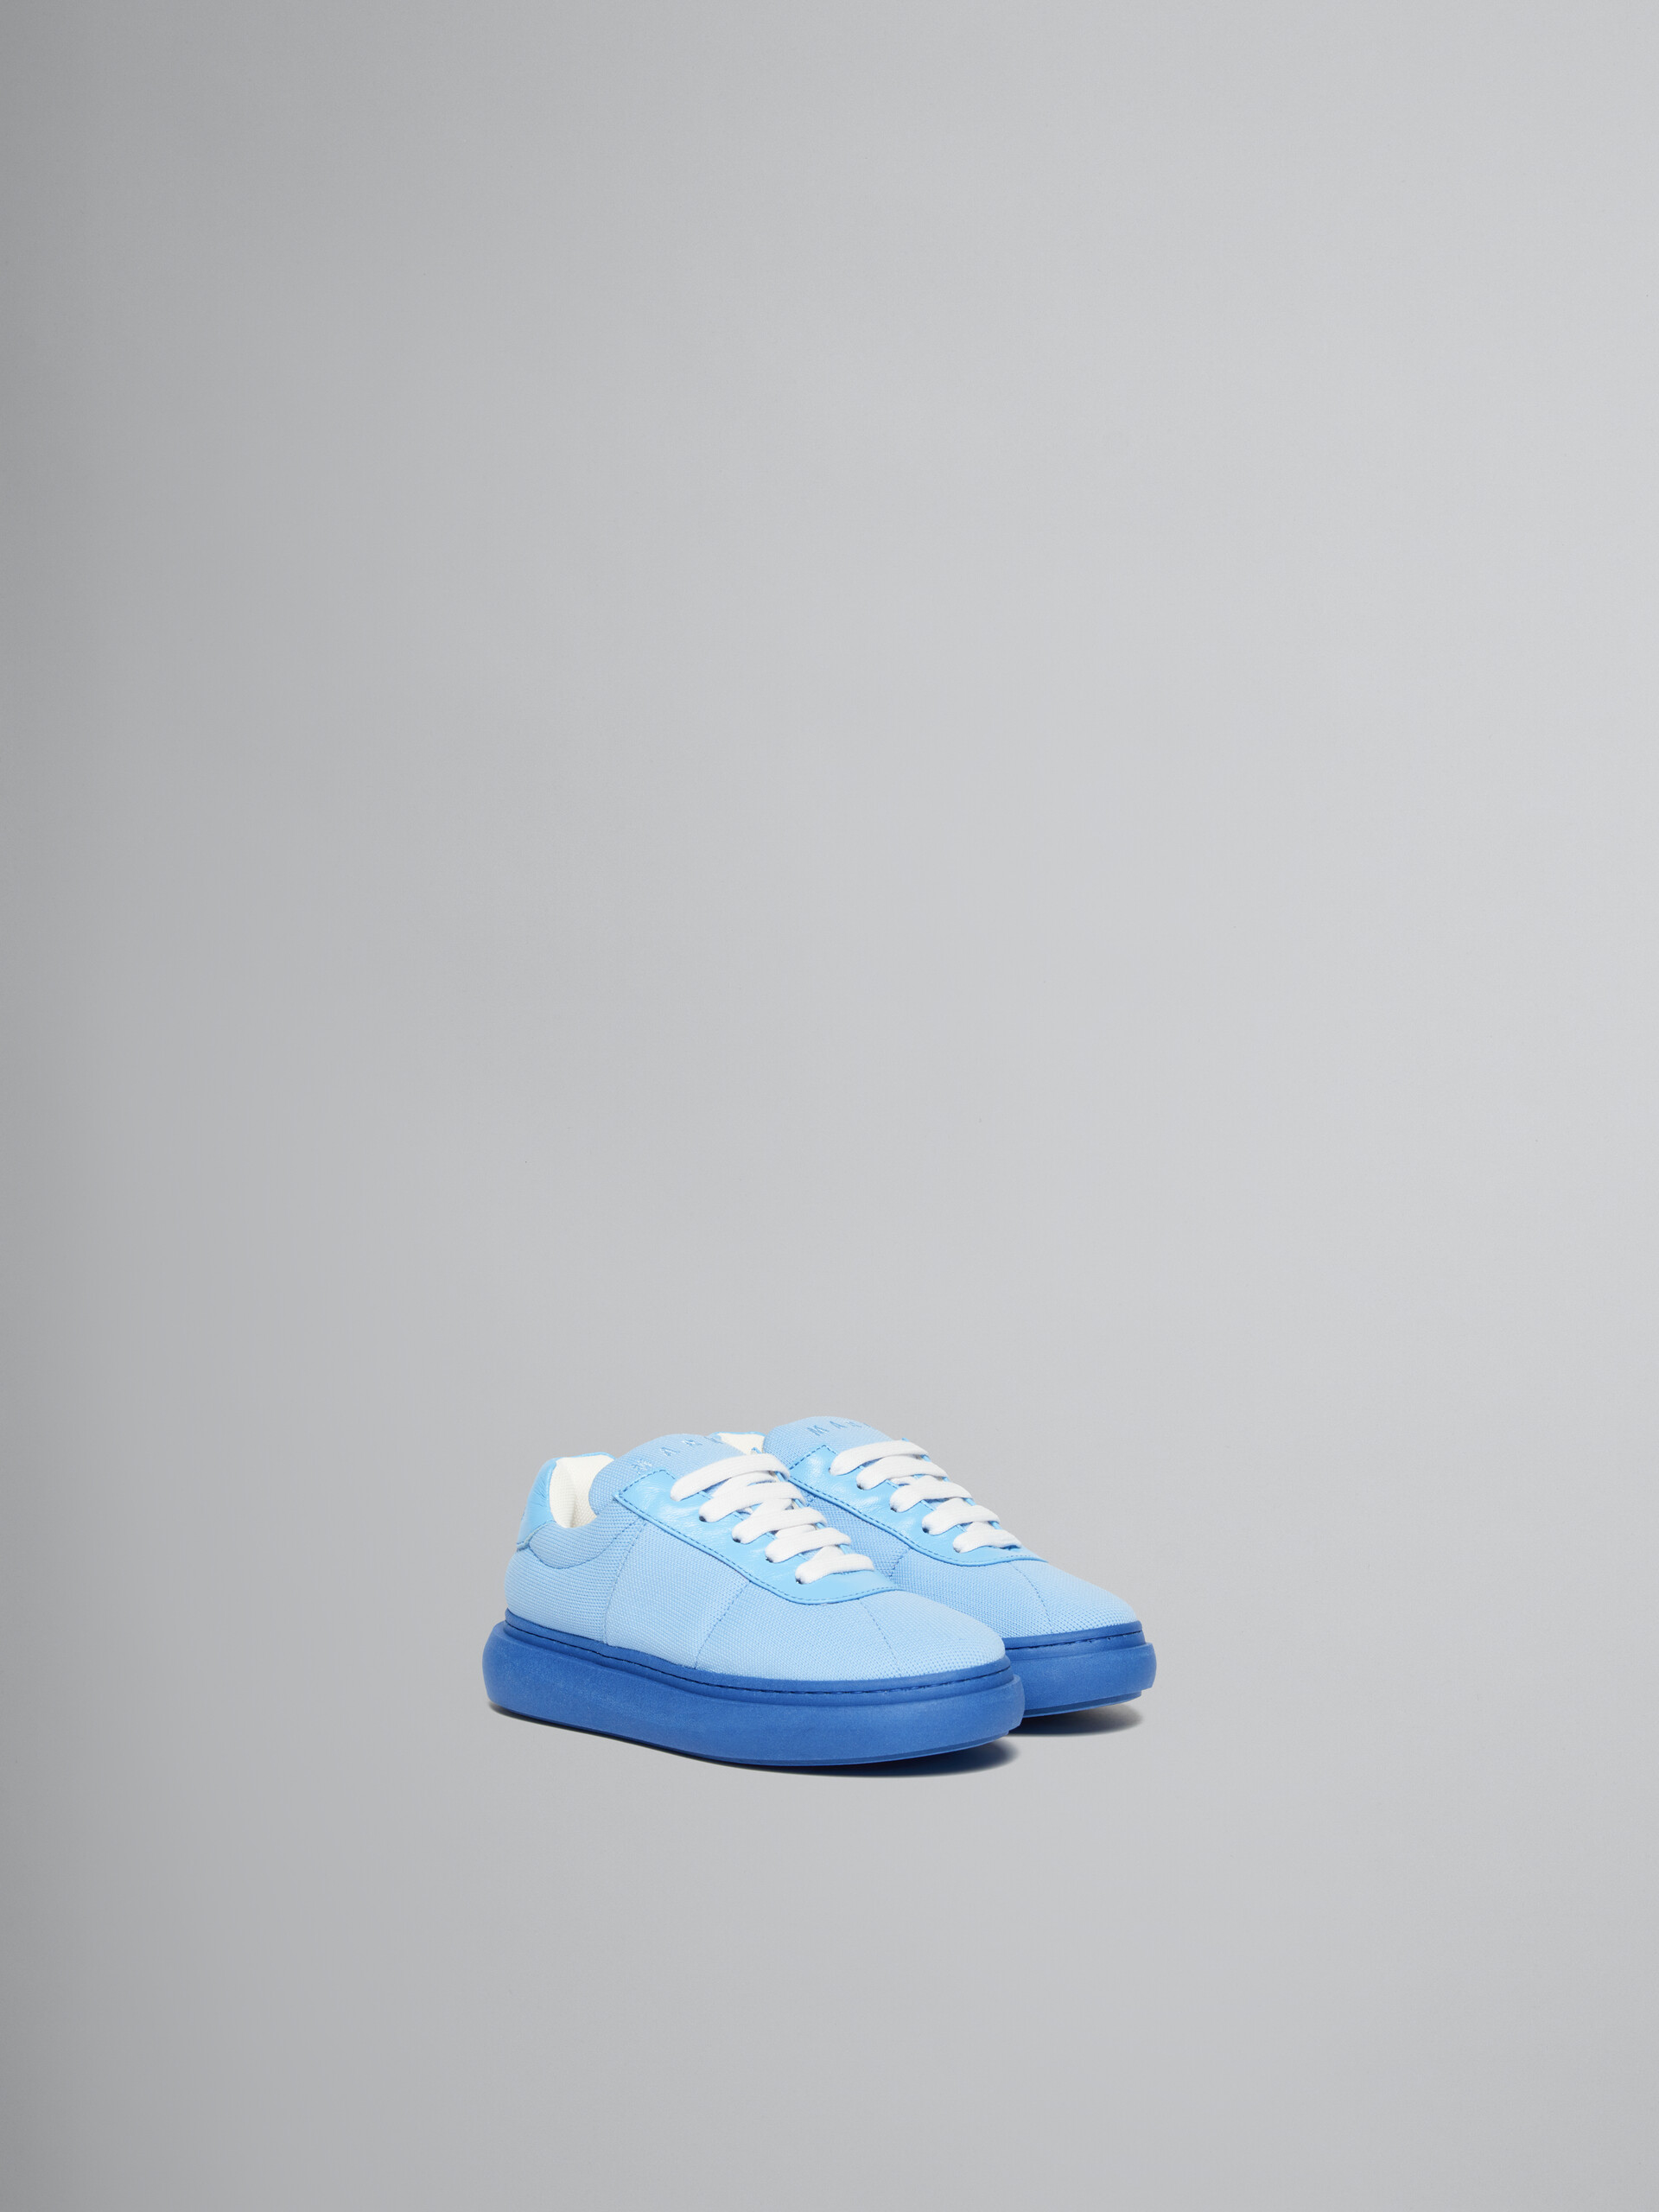 Sneakers en cuir matelassé bleu clair - ENFANT - Image 2